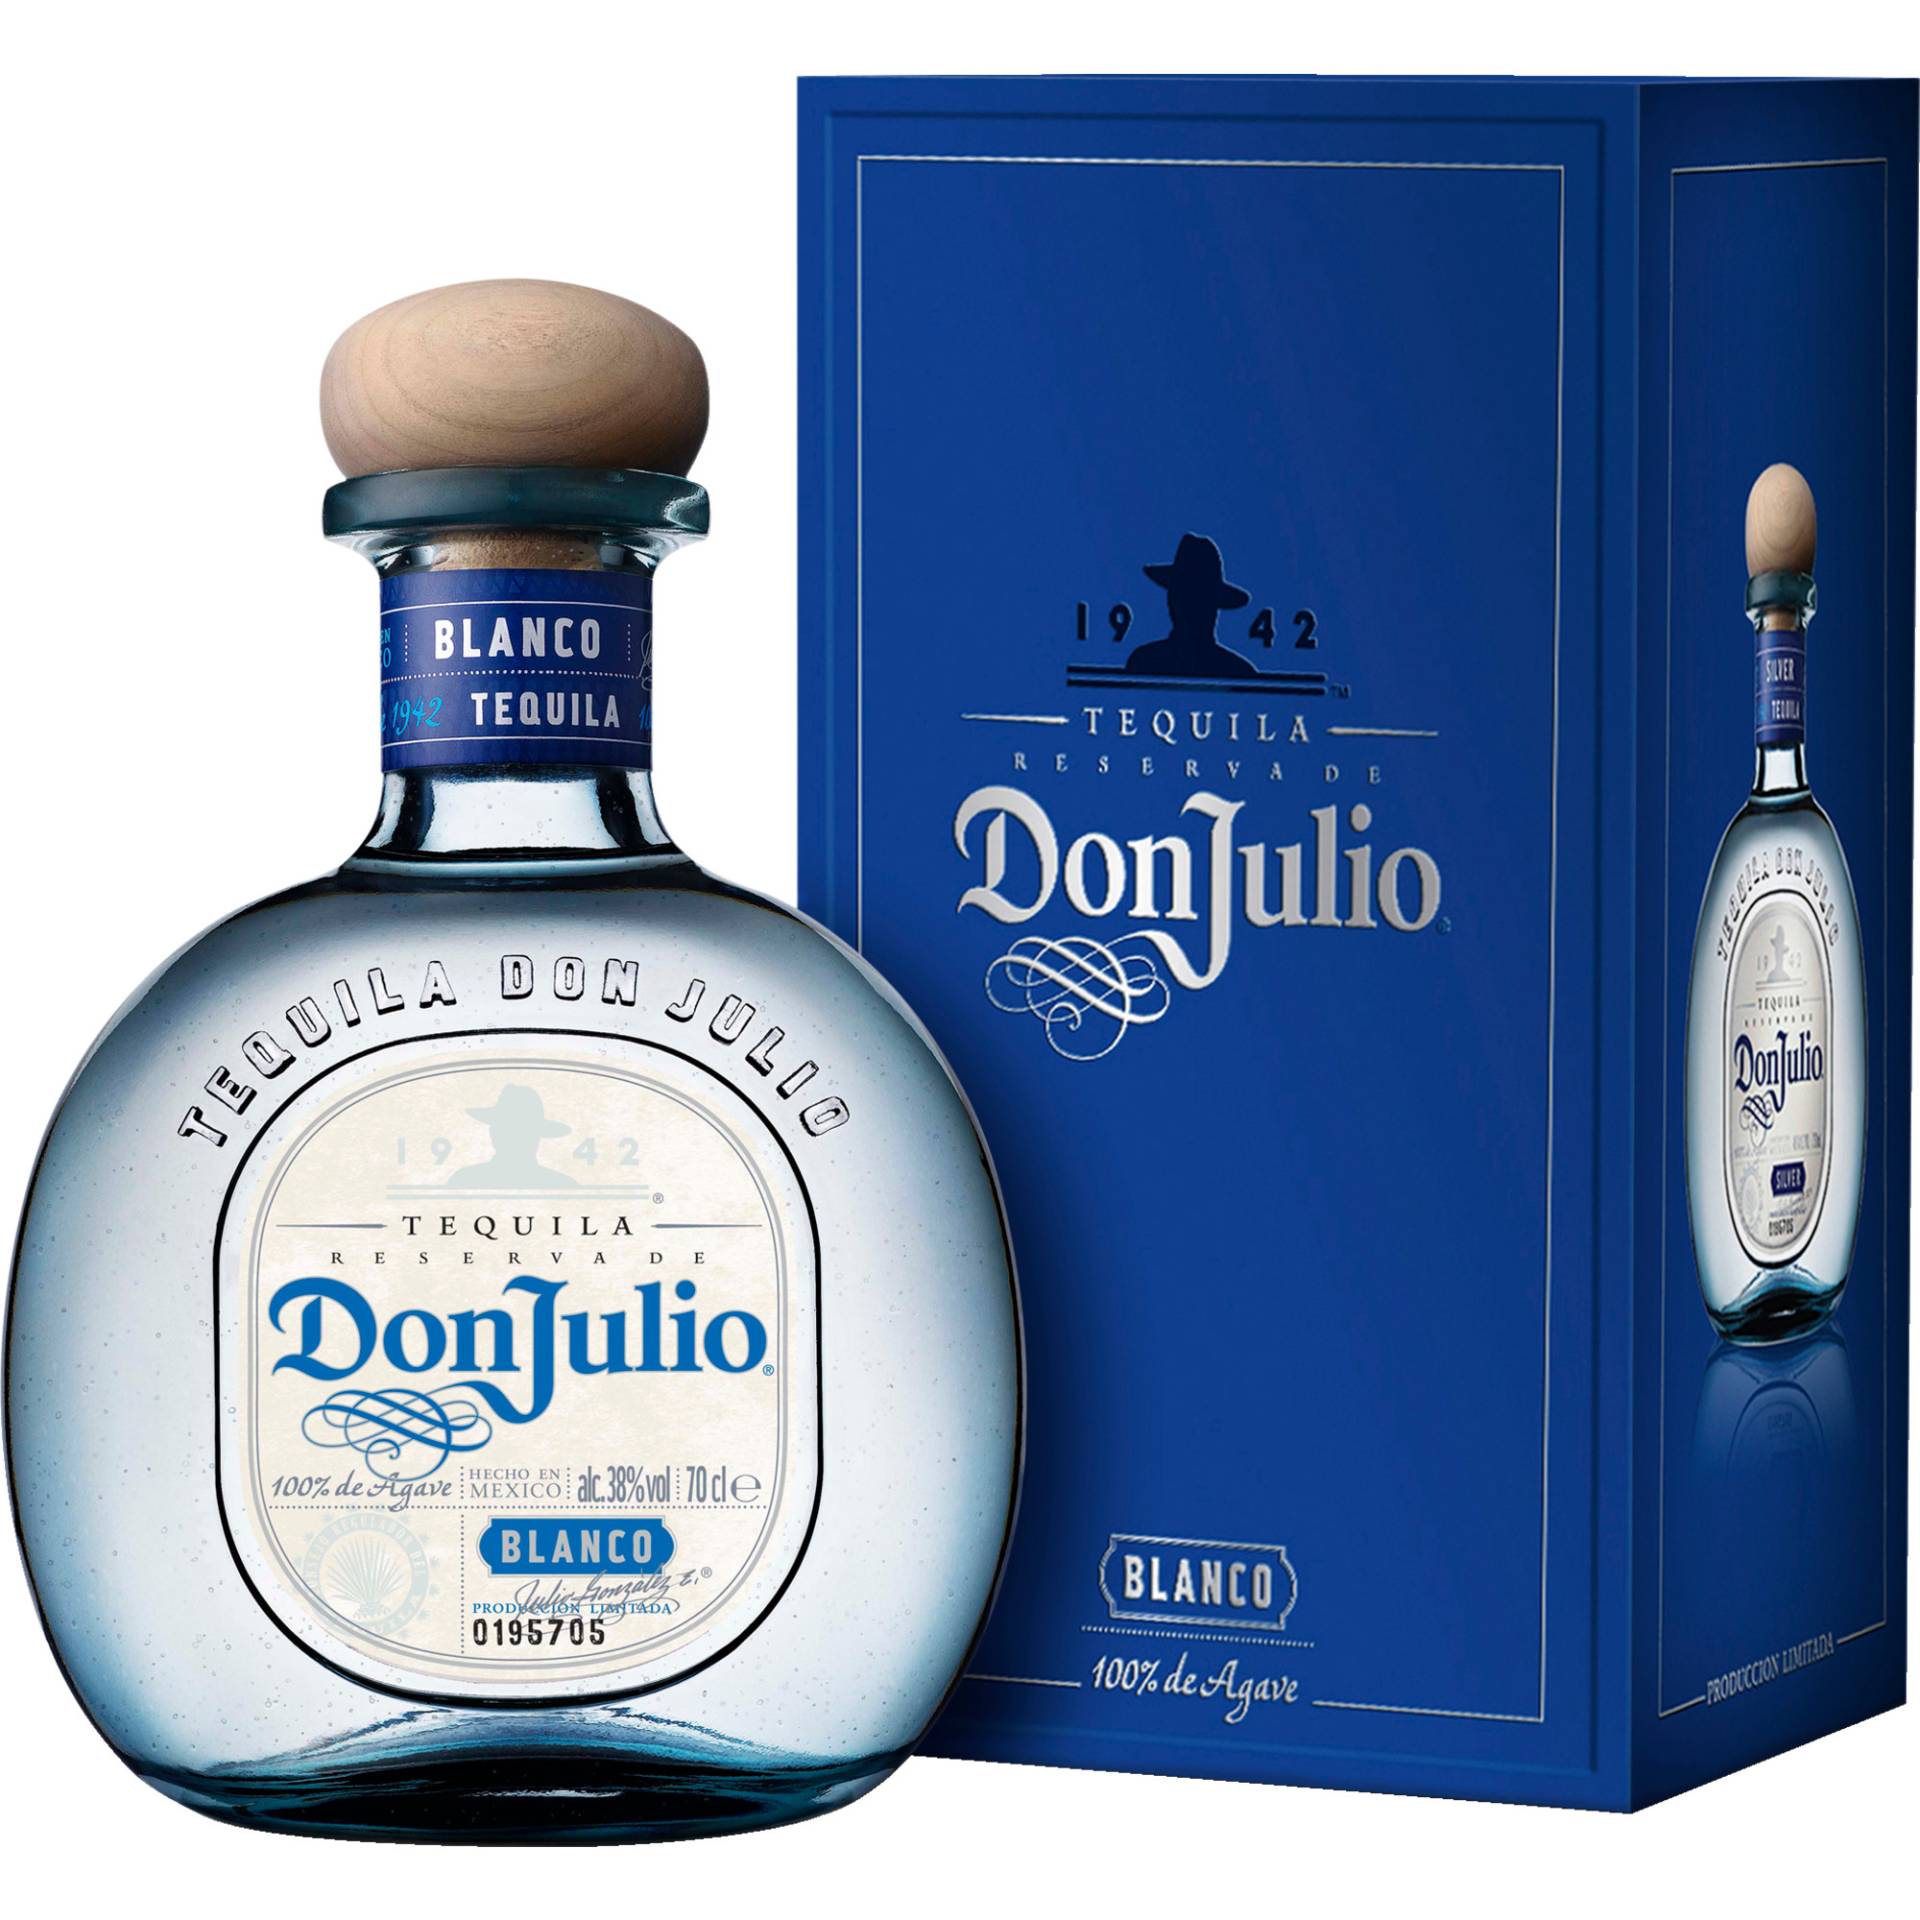 Don Julio Tequila Blanco, 38 % vol. 0,7 L, Spirituosen von Casamigos Tequila, Molenweerf 12, Amsterdam 1014 BG Netherlands